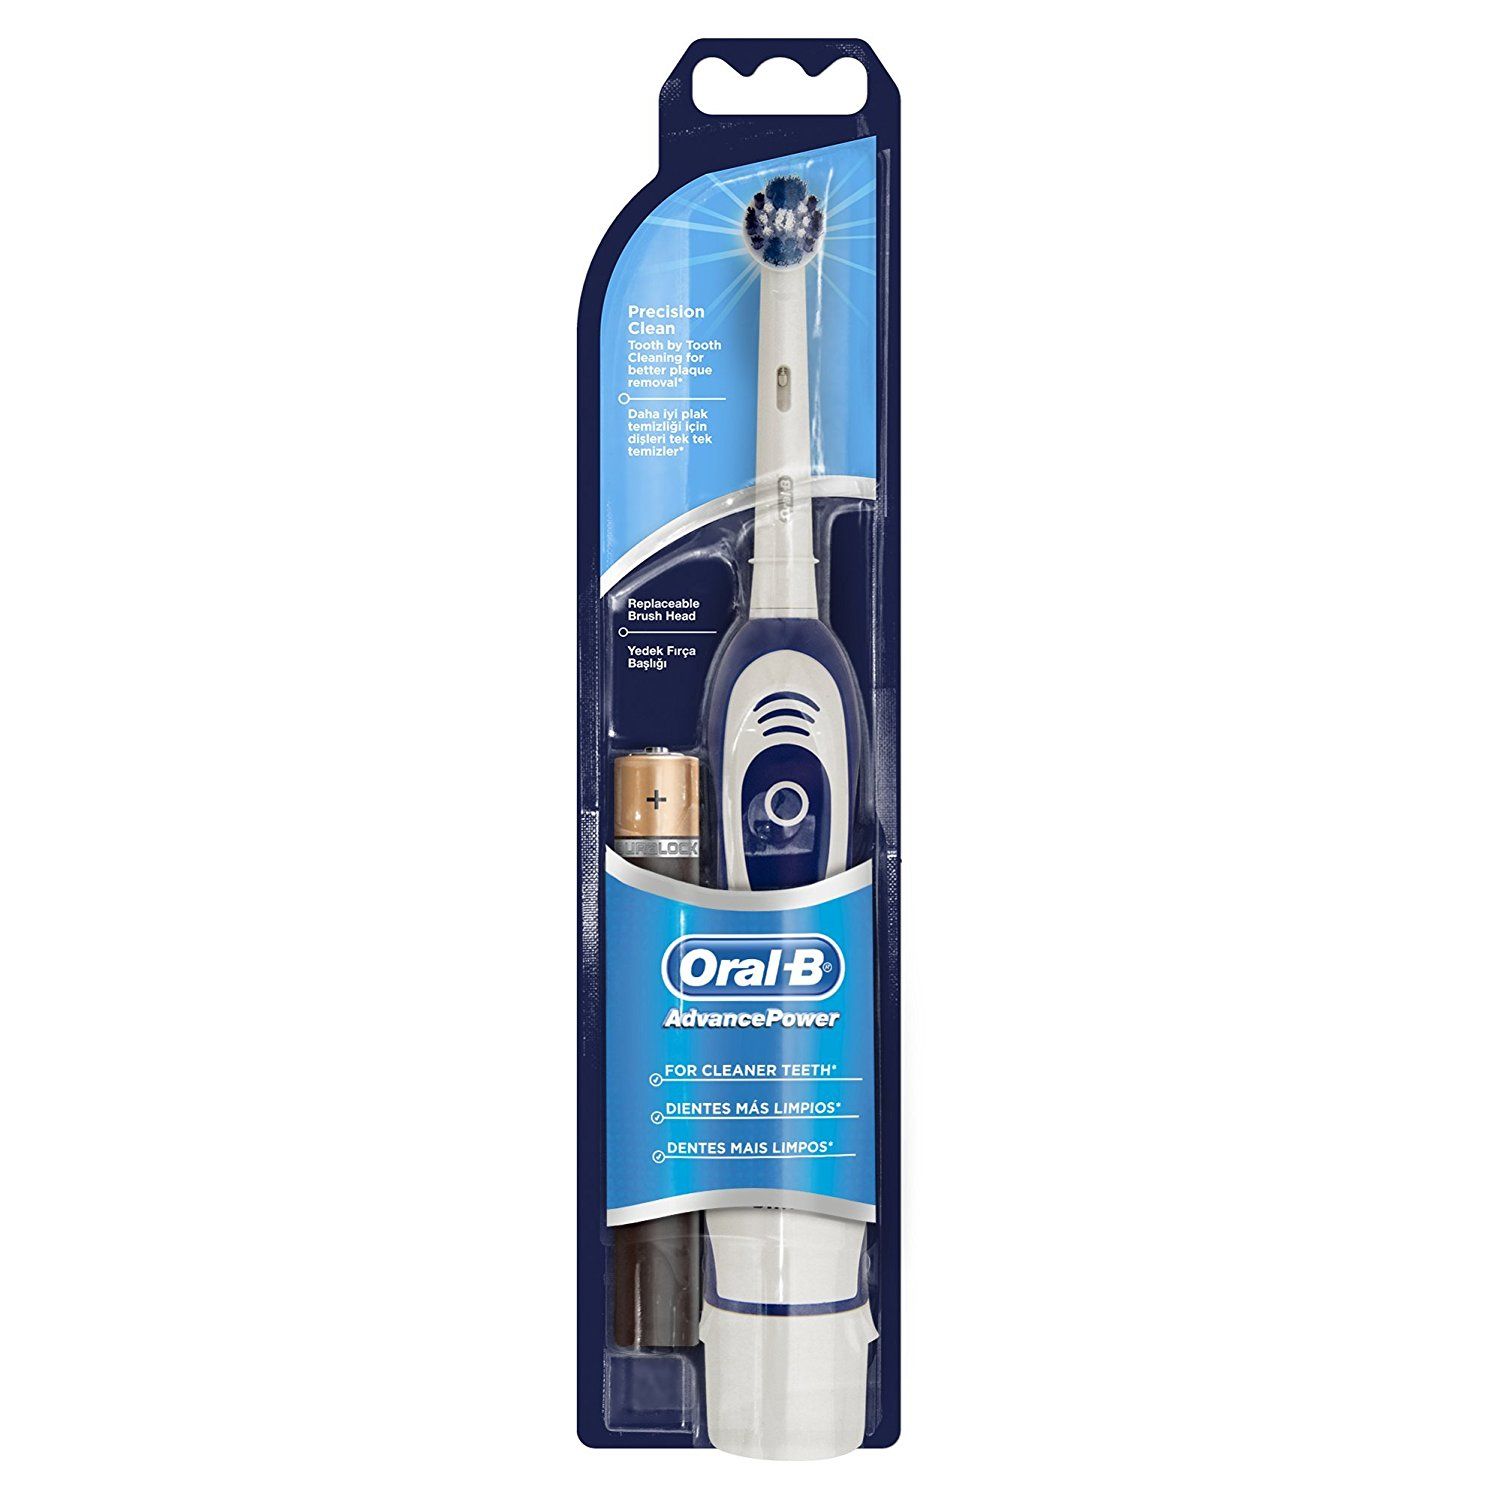 Advance Power Zahnbürste von Braun Oral-B mit Batterie